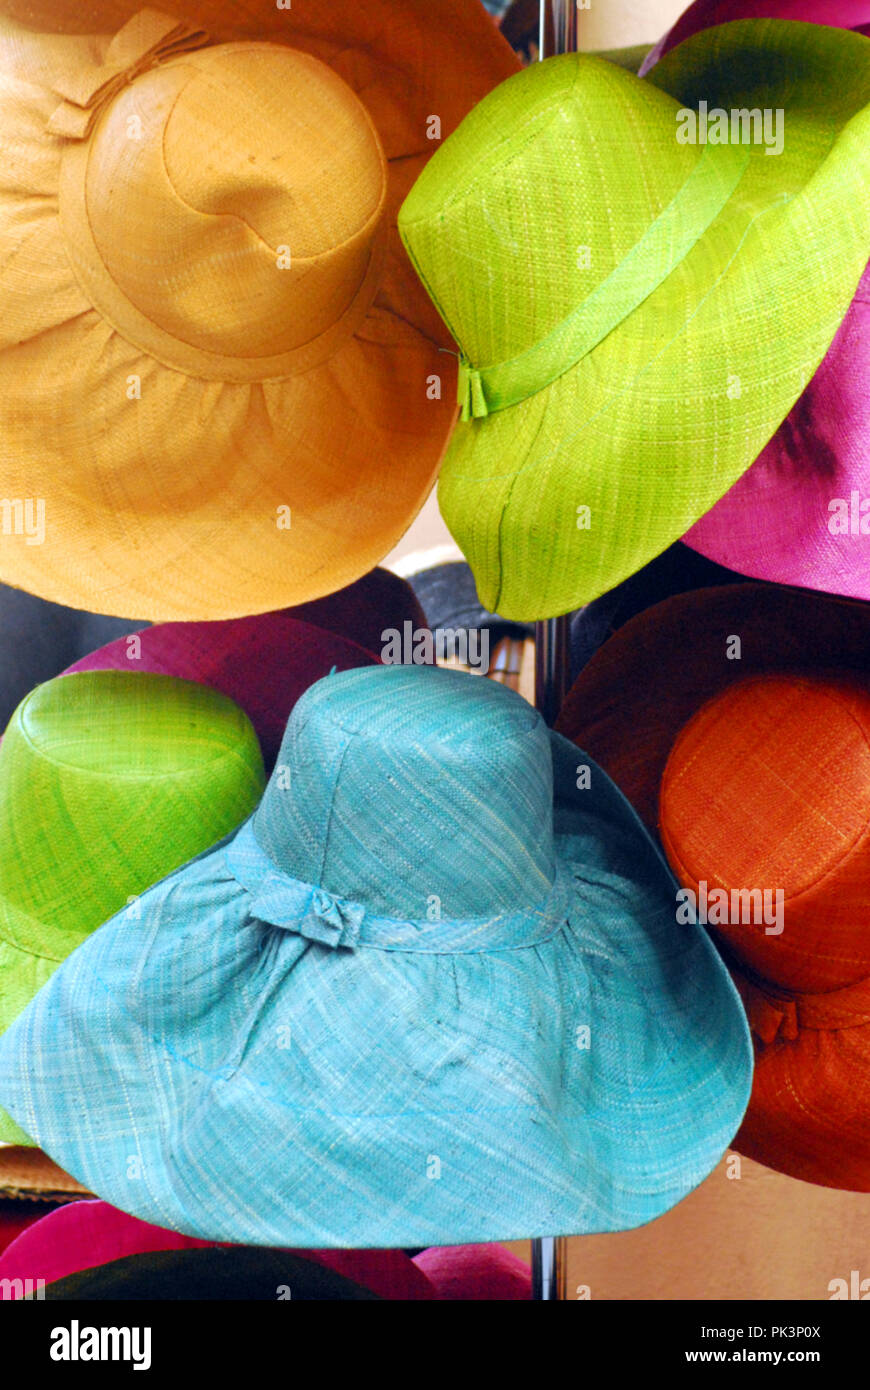 Ces chapeaux de soleil aux couleurs vives font certainement une belle déclaration de mode. Un excellent fond pour les voyages ou la présentation de médias de shopping. Banque D'Images